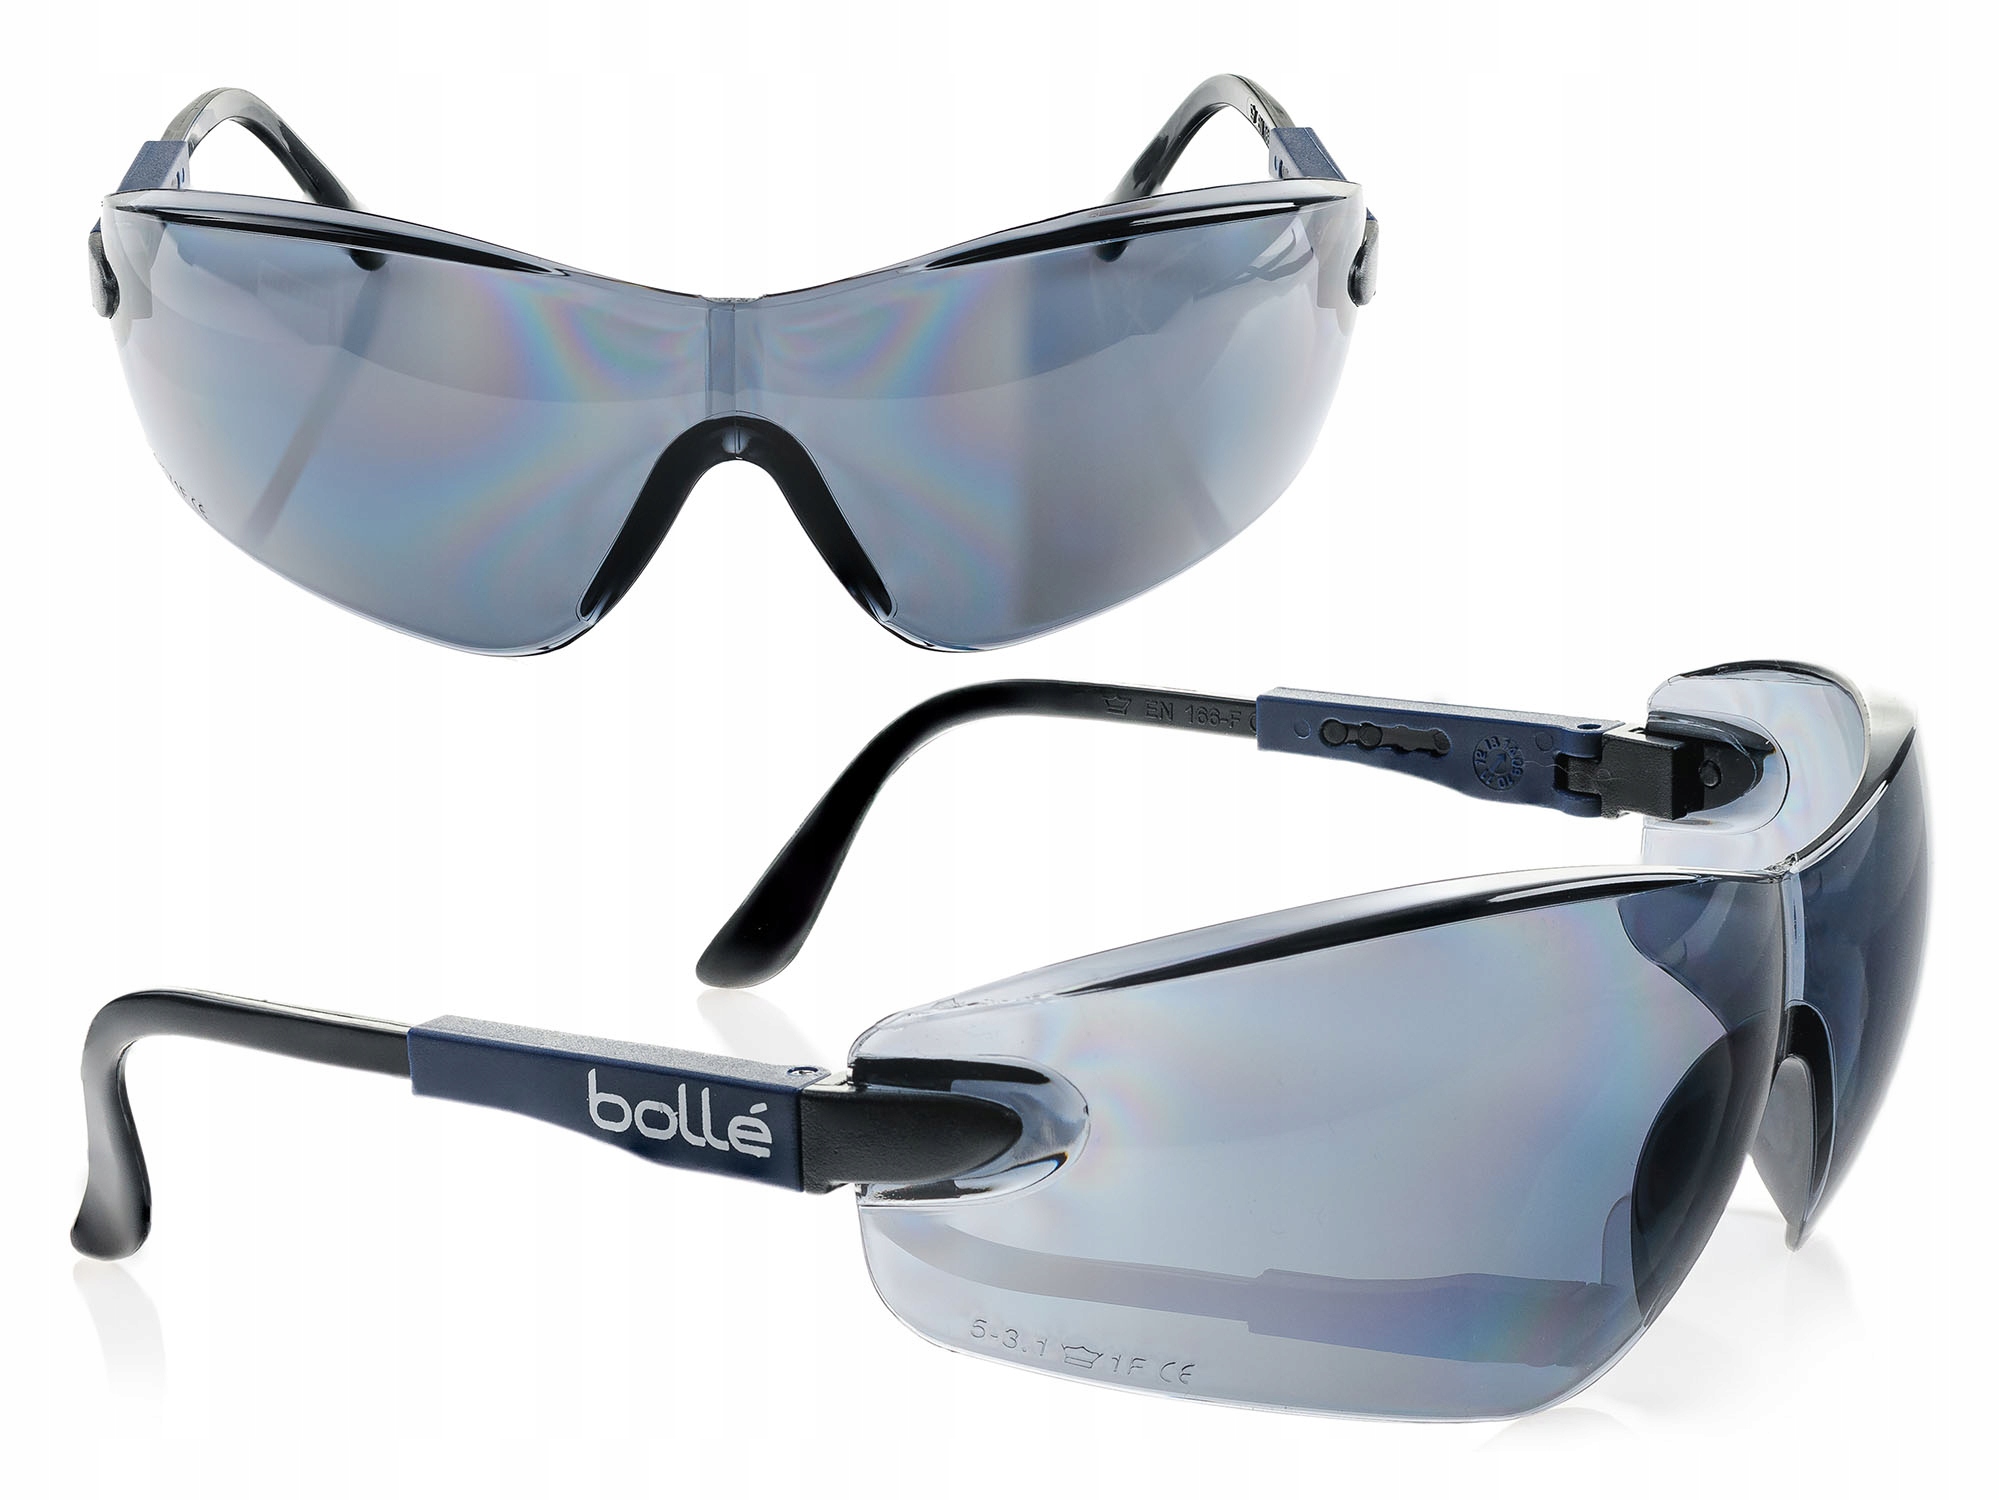 Очки bolle. Баллистические очки Bolle. Bolle Viper очки. Тактические очки Bolle Tactical. Очки баллистические Bolle 100 de.